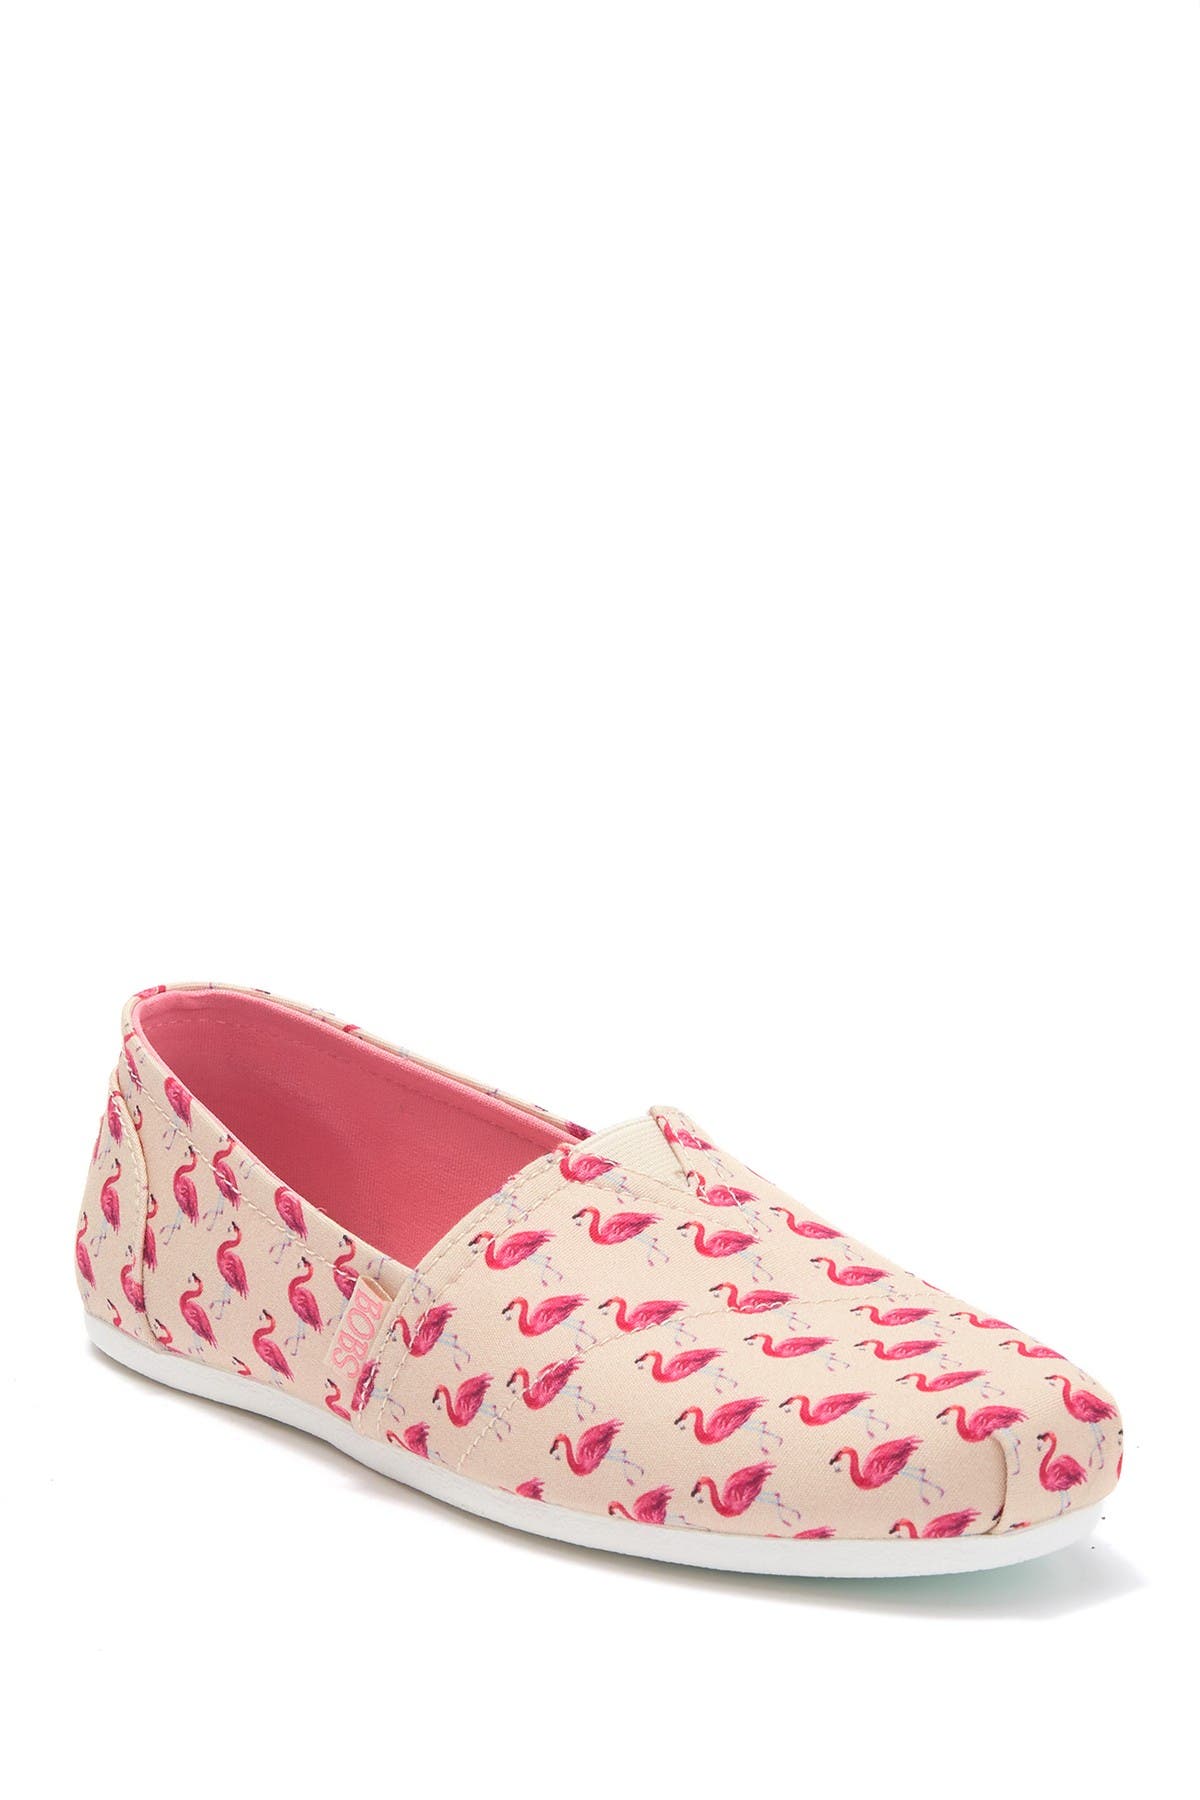 skechers flamingo sneakers